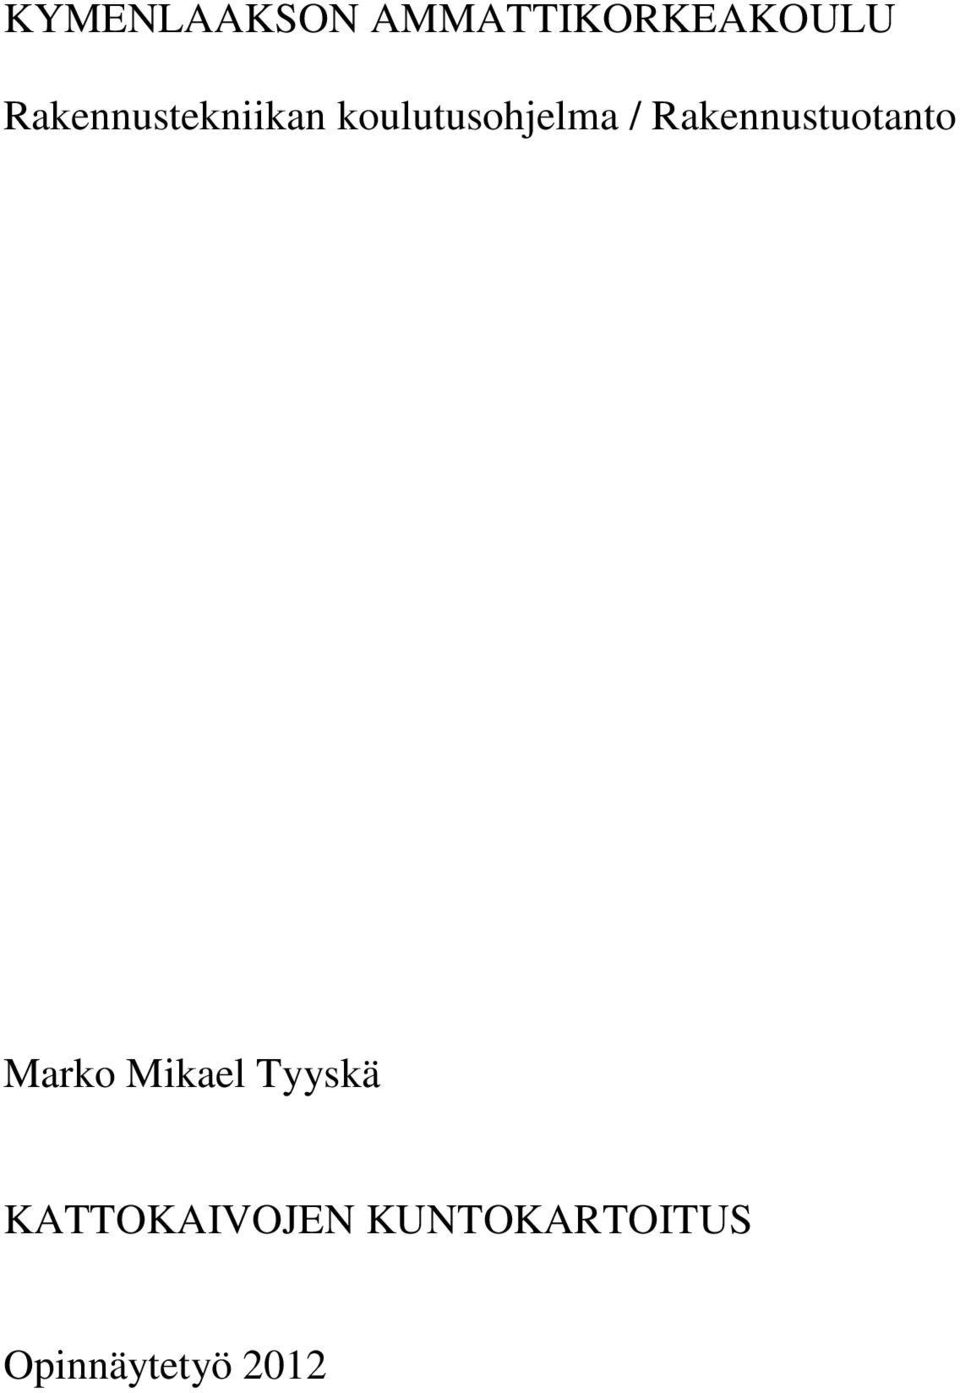 Rakennustuotanto Marko Mikael Tyyskä